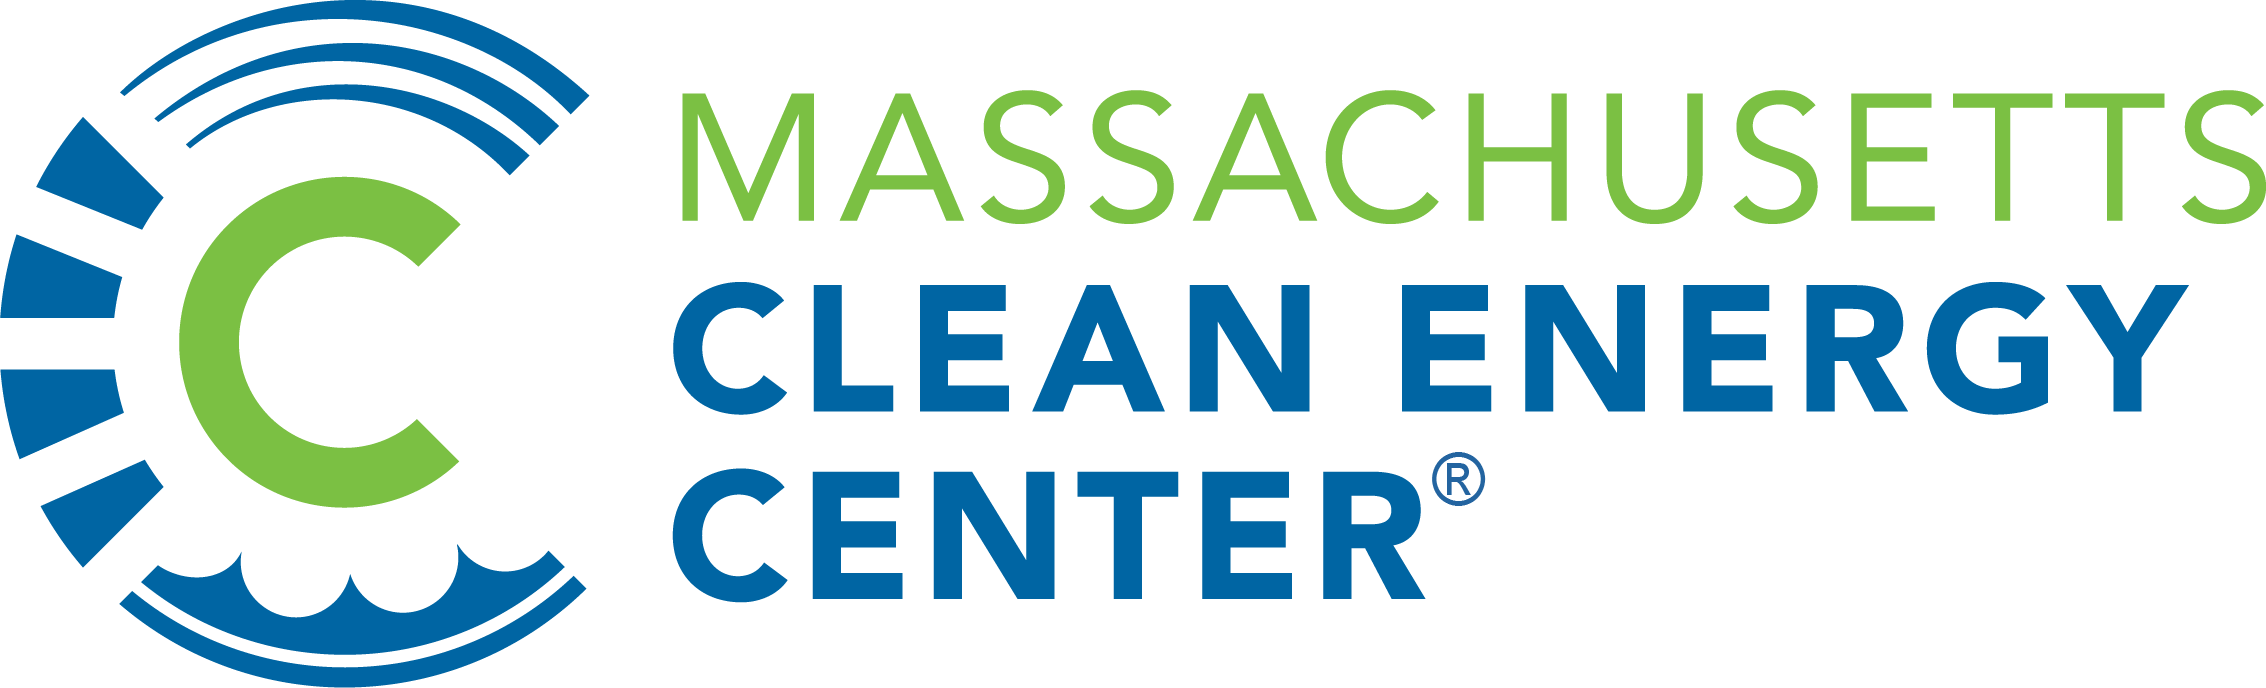 Massachusetts-Clean-Energy-Center.png